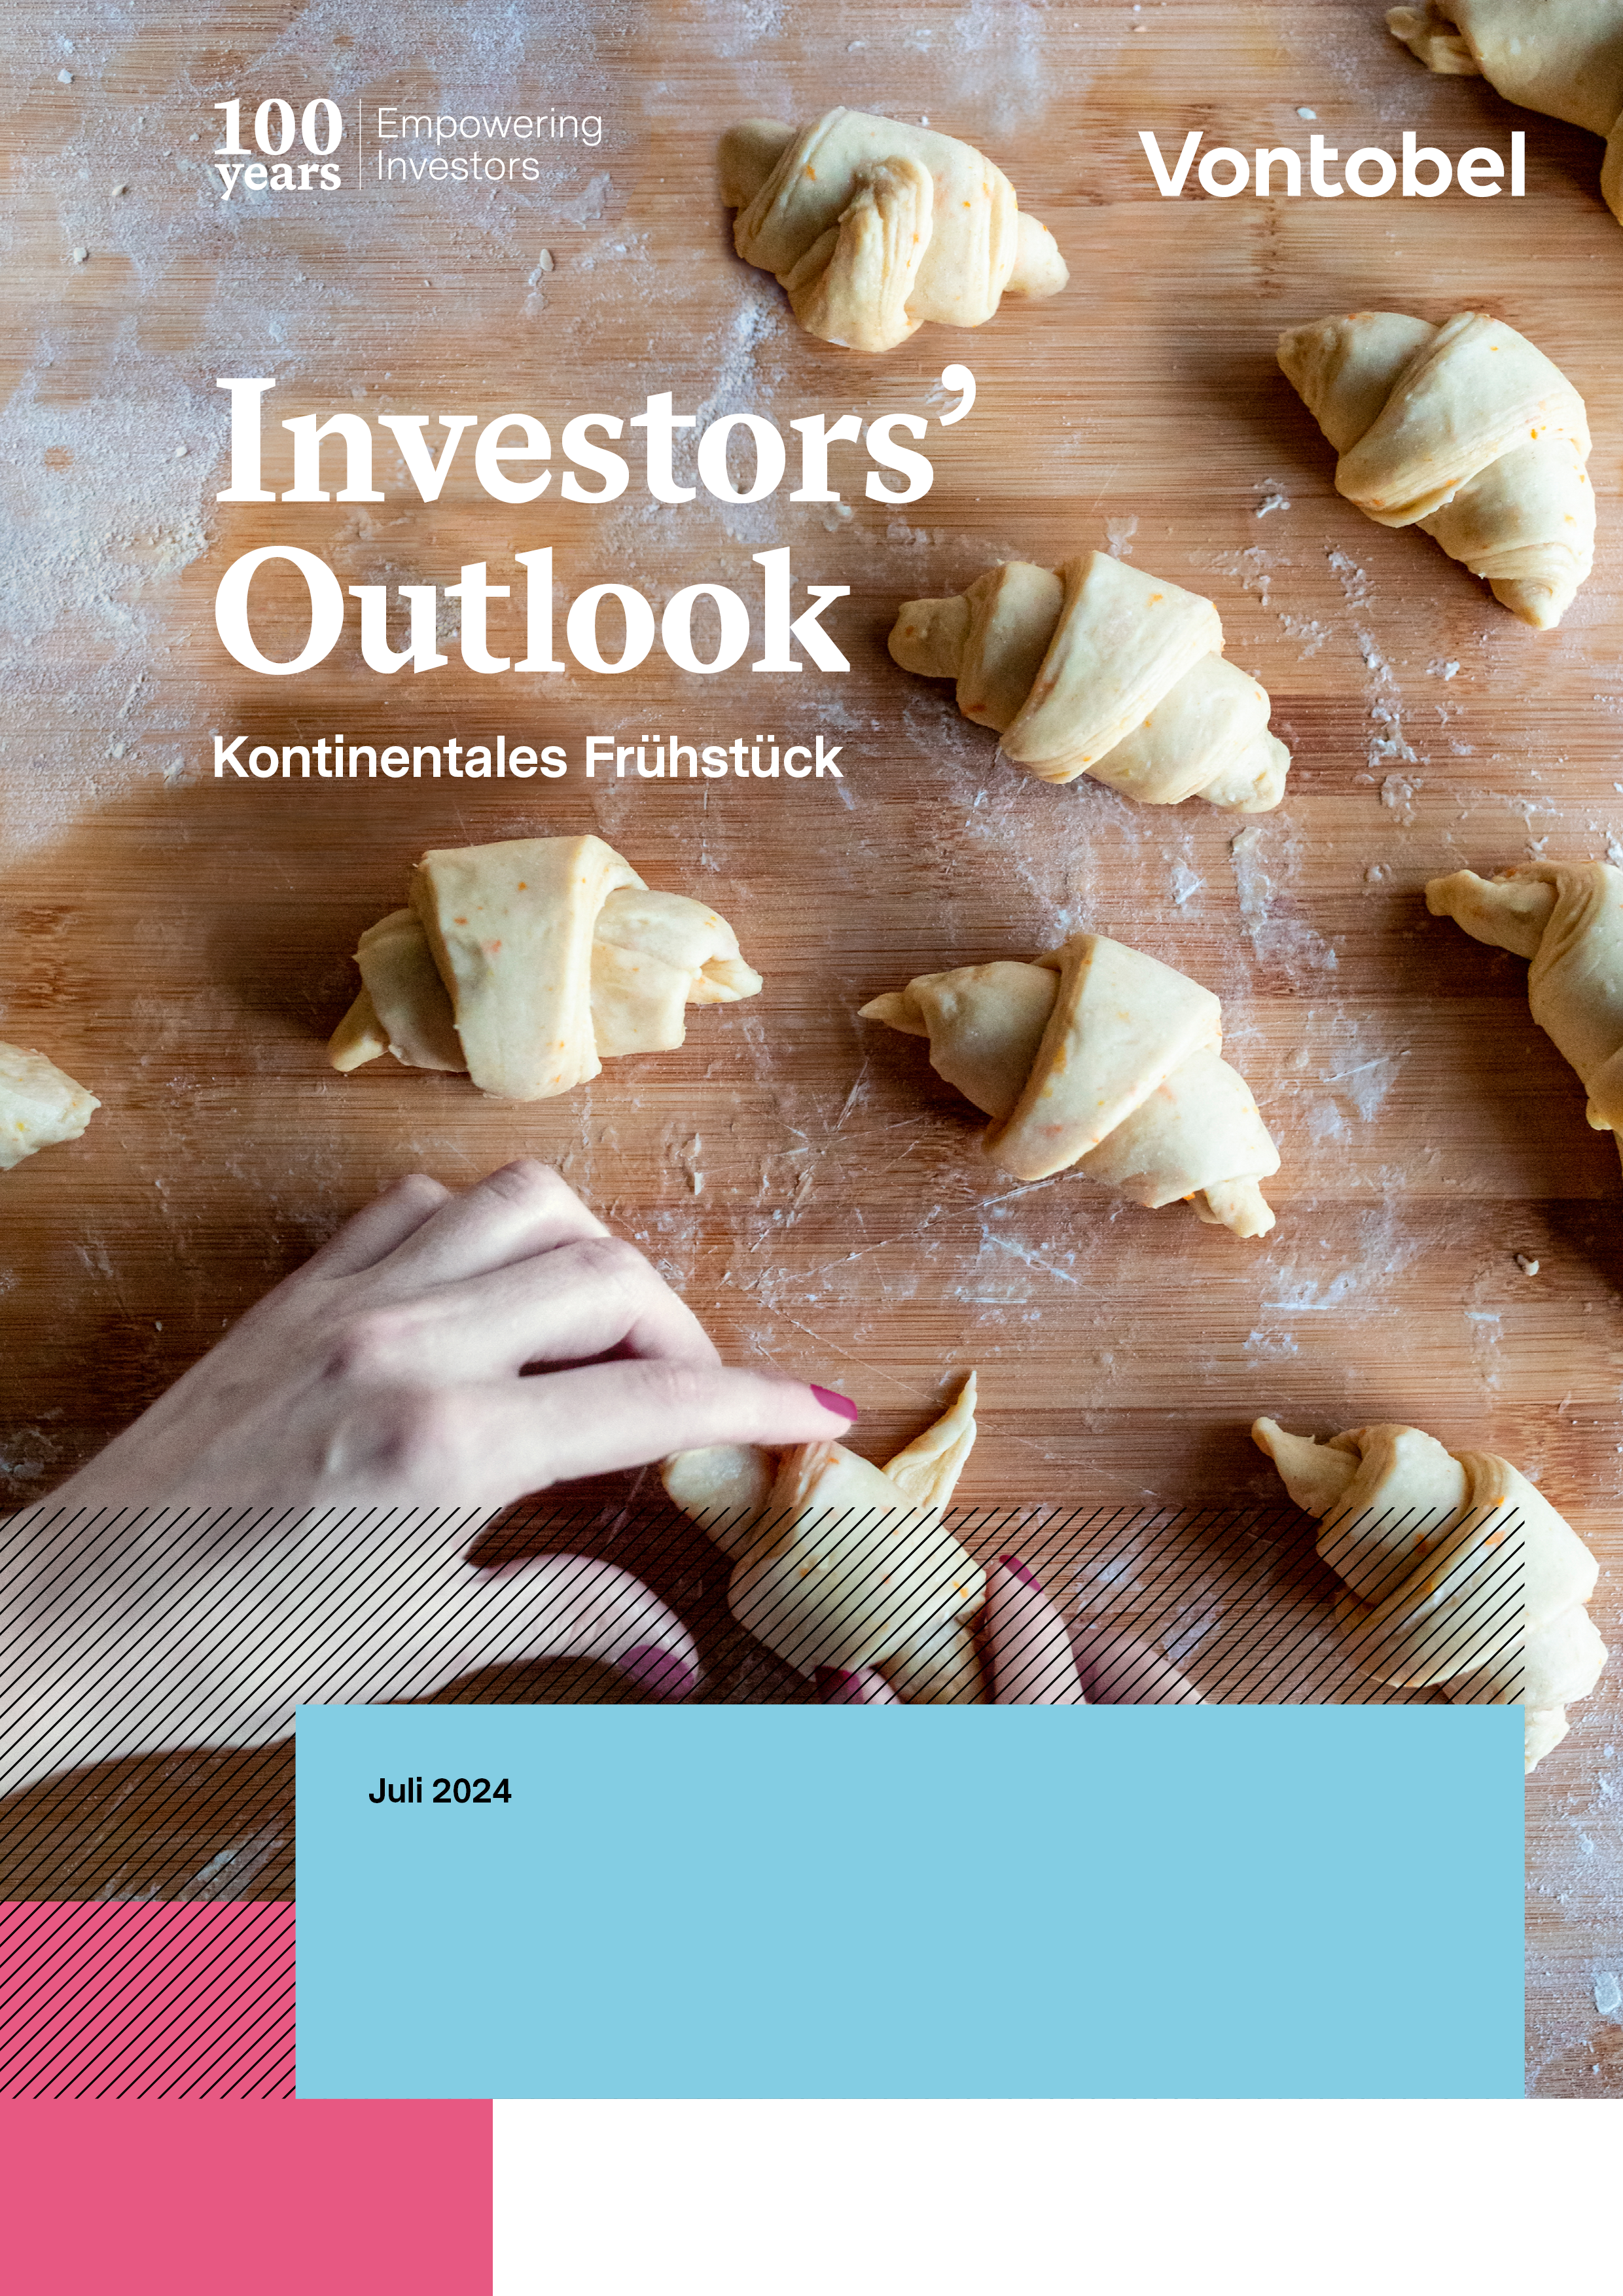 Investor's Outlook Mai von Vontobel - Cover PDF mit einem Bild von Händen welche kleinen ungebackenen Croissants vorbereiten